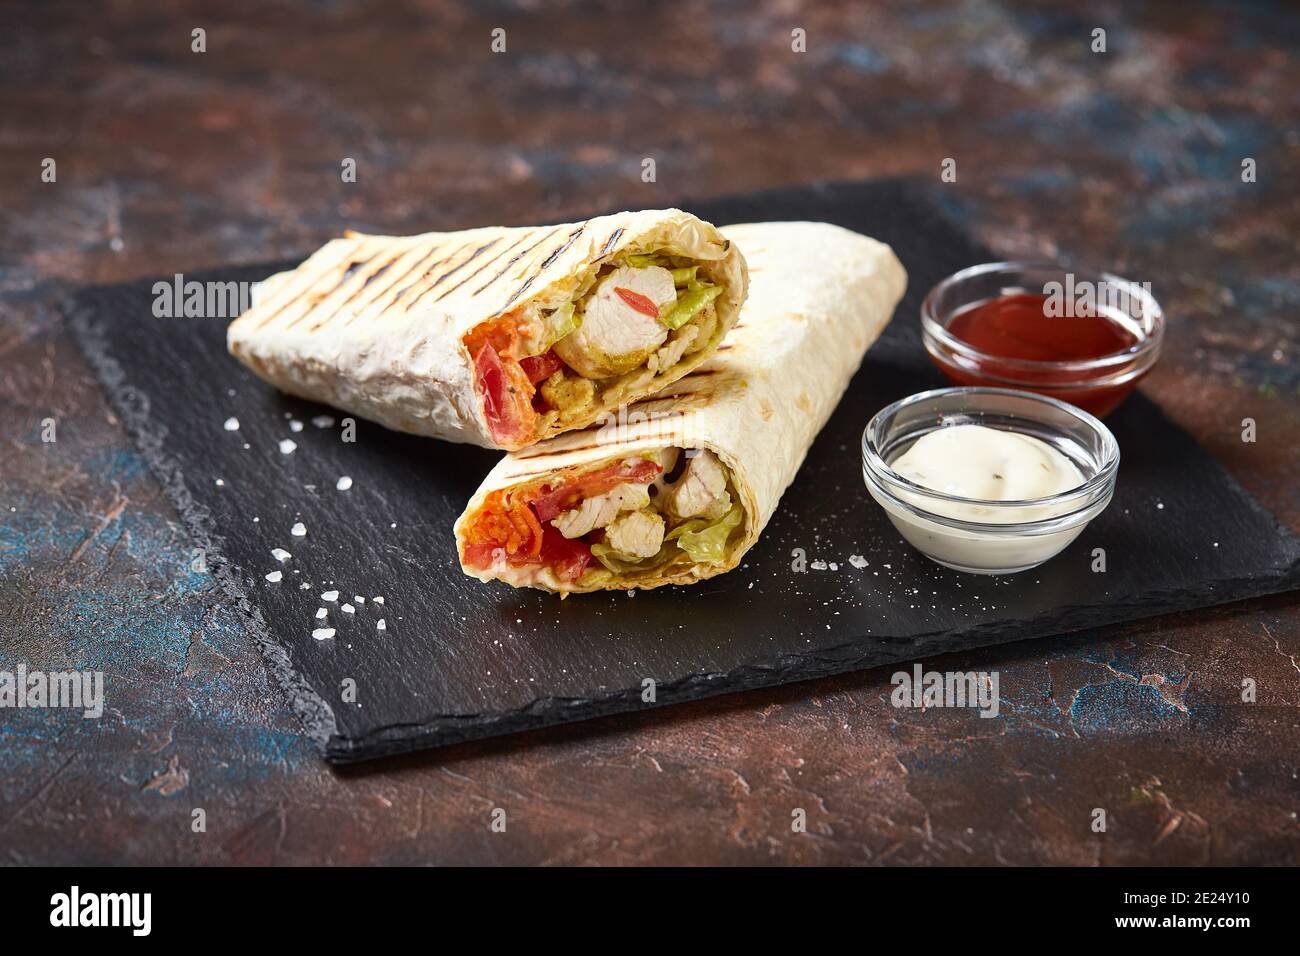 Shawarma traditionnel de l'est avec poulet et légumes, donner Kebab avec sauces sur ardoise. Restauration rapide. Cuisine de l'est. Banque D'Images